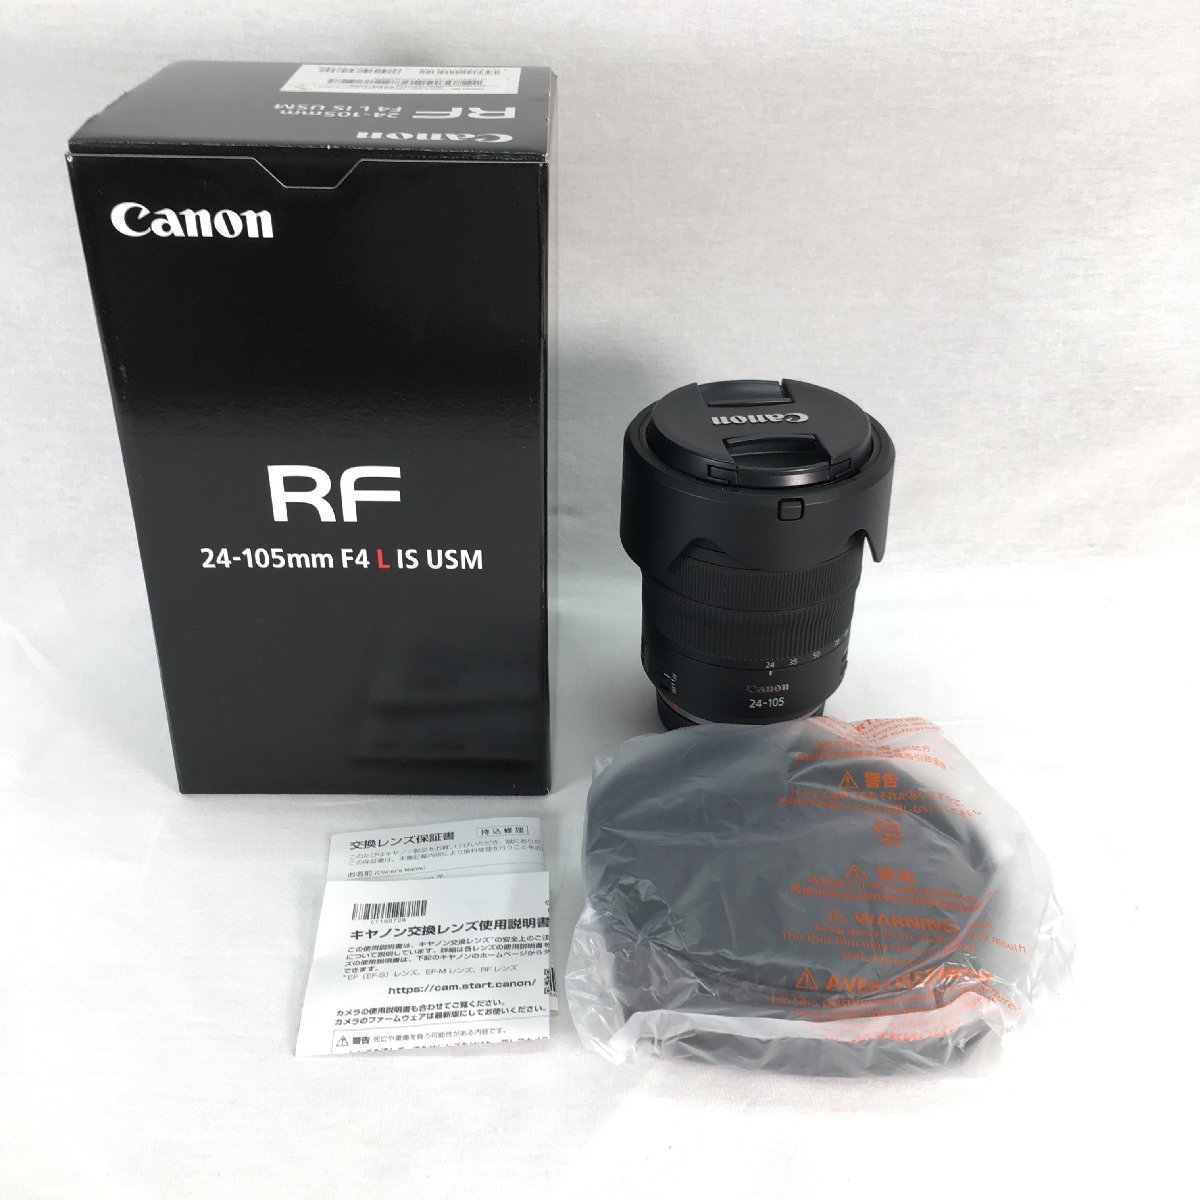 『中古品』Canon キャノン カメラレンズ 24-105mm F4 L IS USM